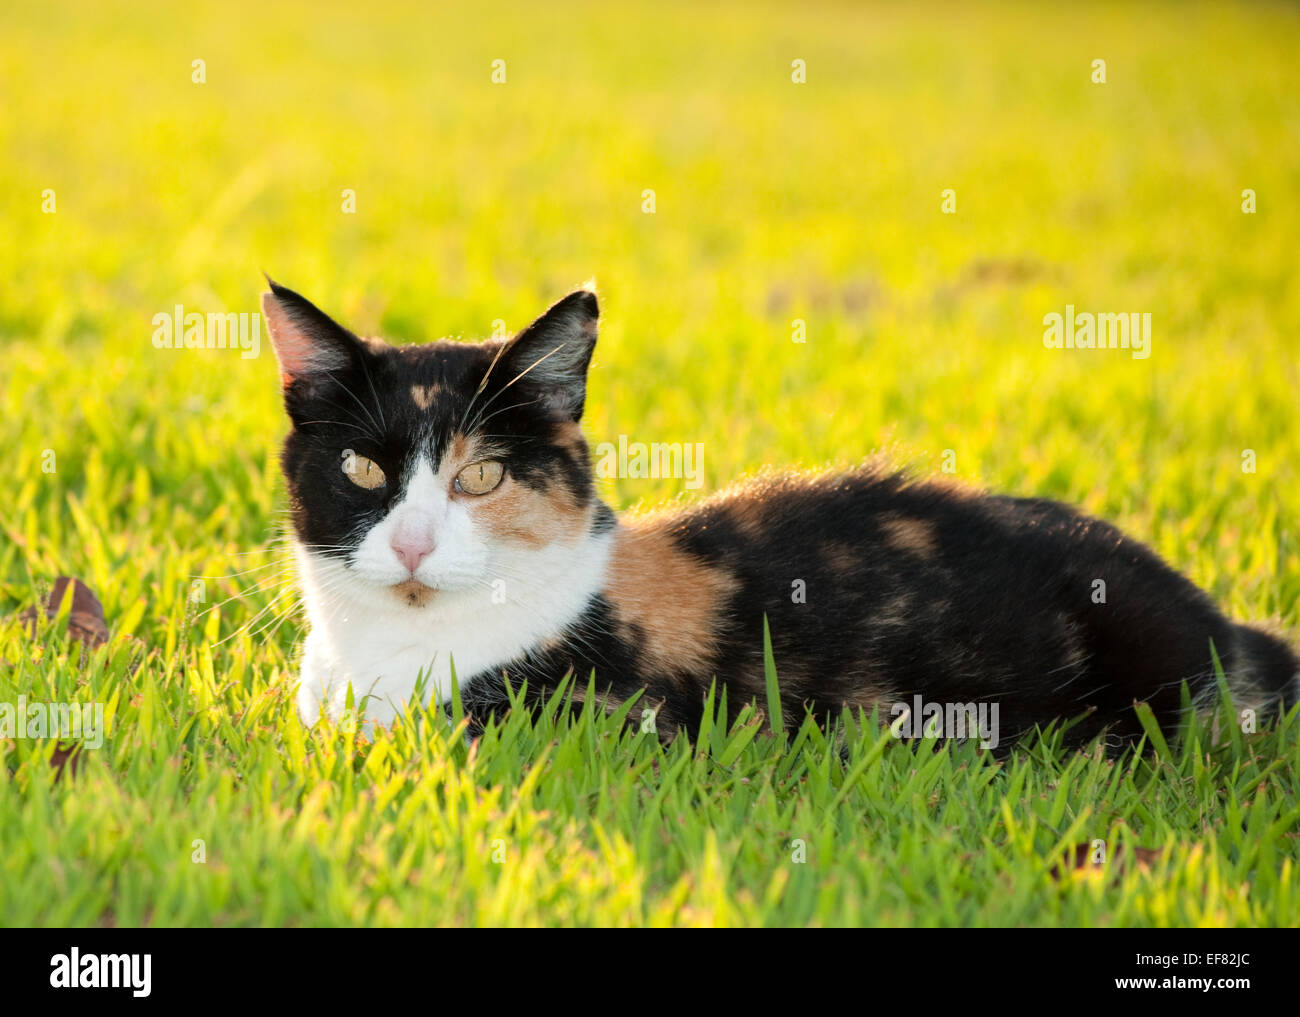 Belle et colorée chat calico dans l'herbe en plein soleil Banque D'Images